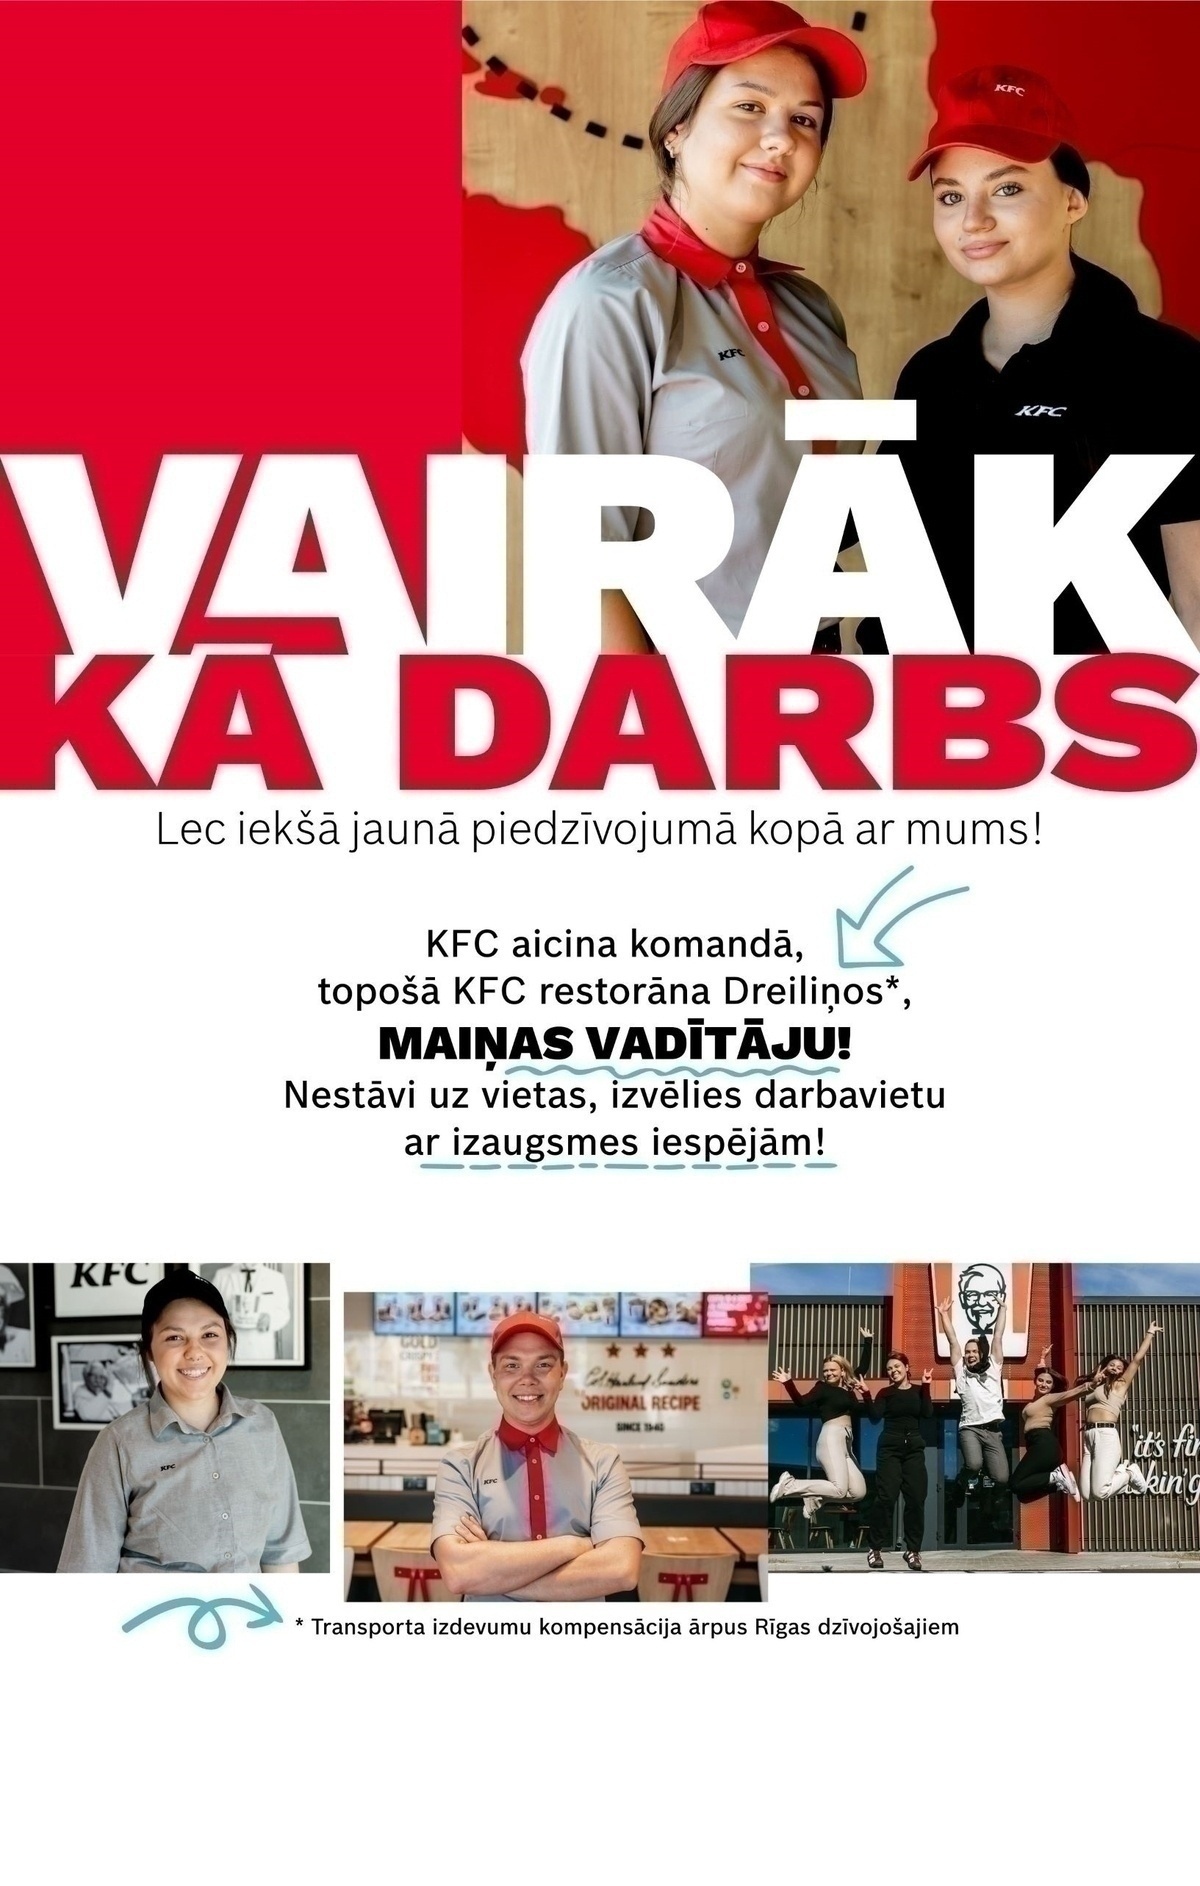 CVMarket.lv klients "KFC" restorāna maiņas vadītājs/a (Juglas iela 95)